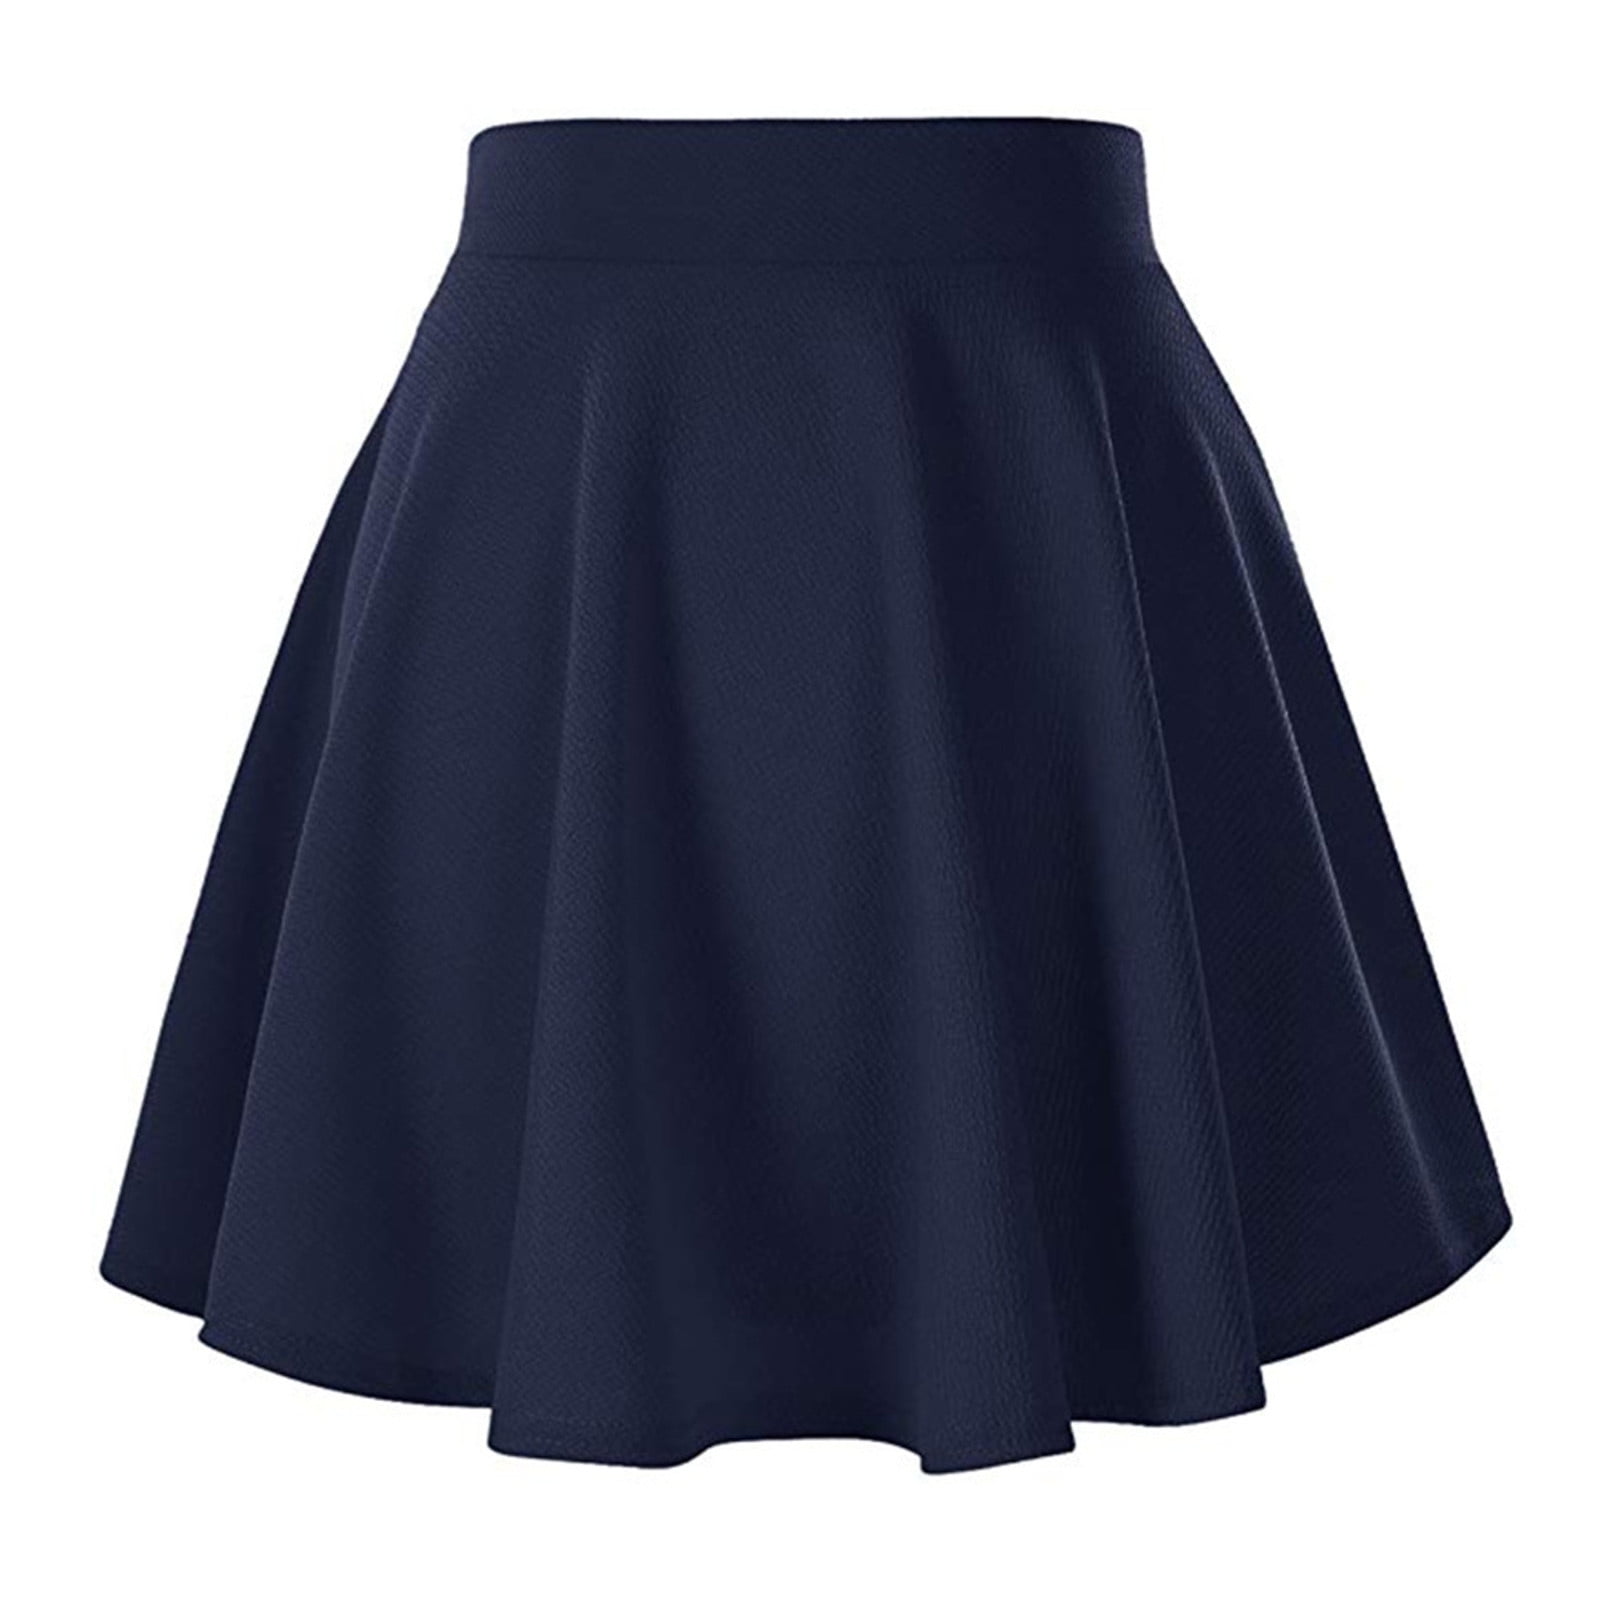 MRULIC skirts for women Women's Mini Flared Skirt Casual Pleats ...